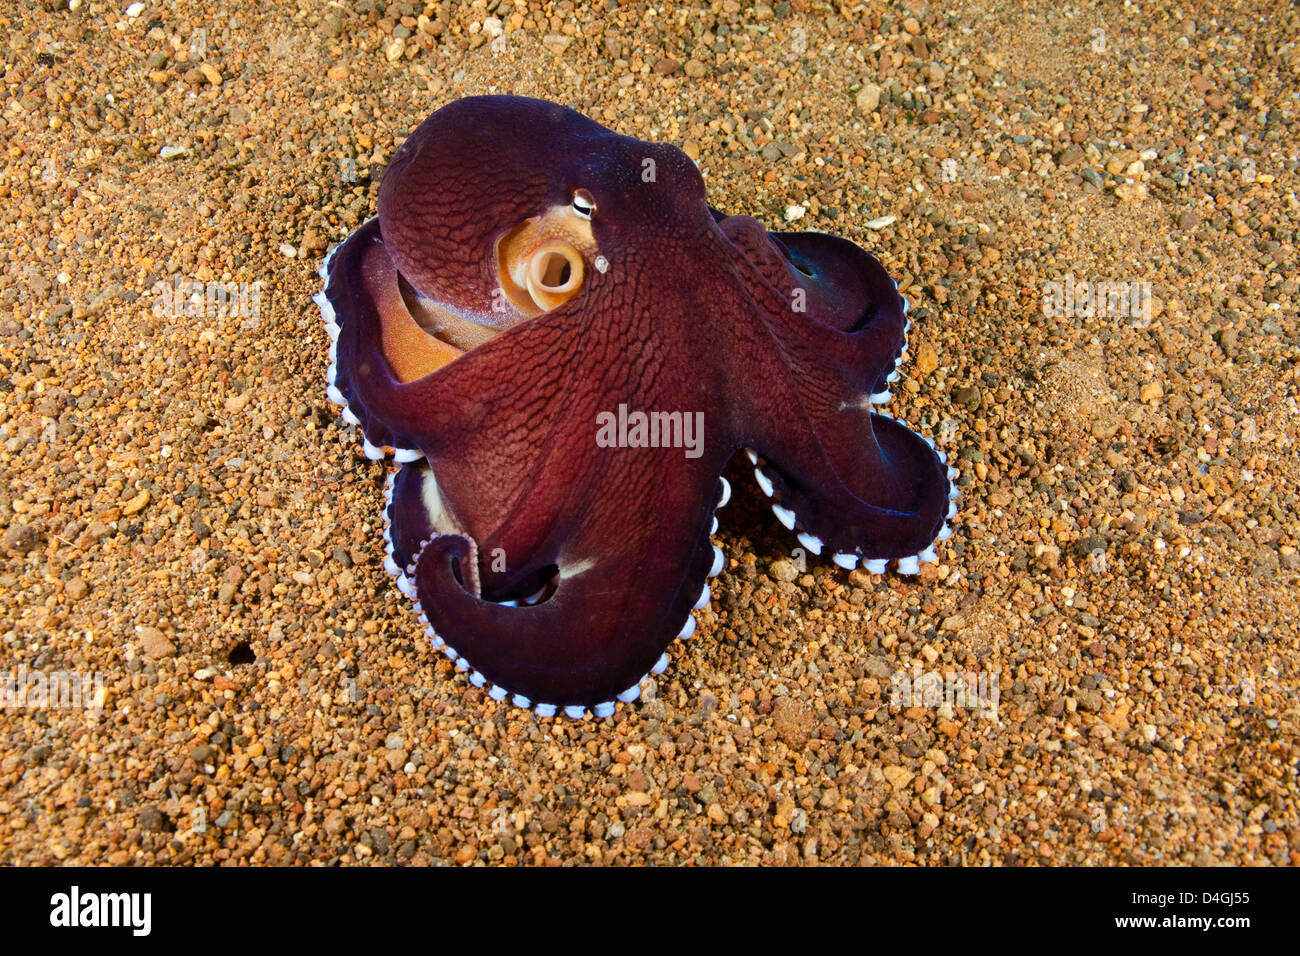 Veined octopus, Octopus marginatus, Anilao, Philippines. Stock Photo